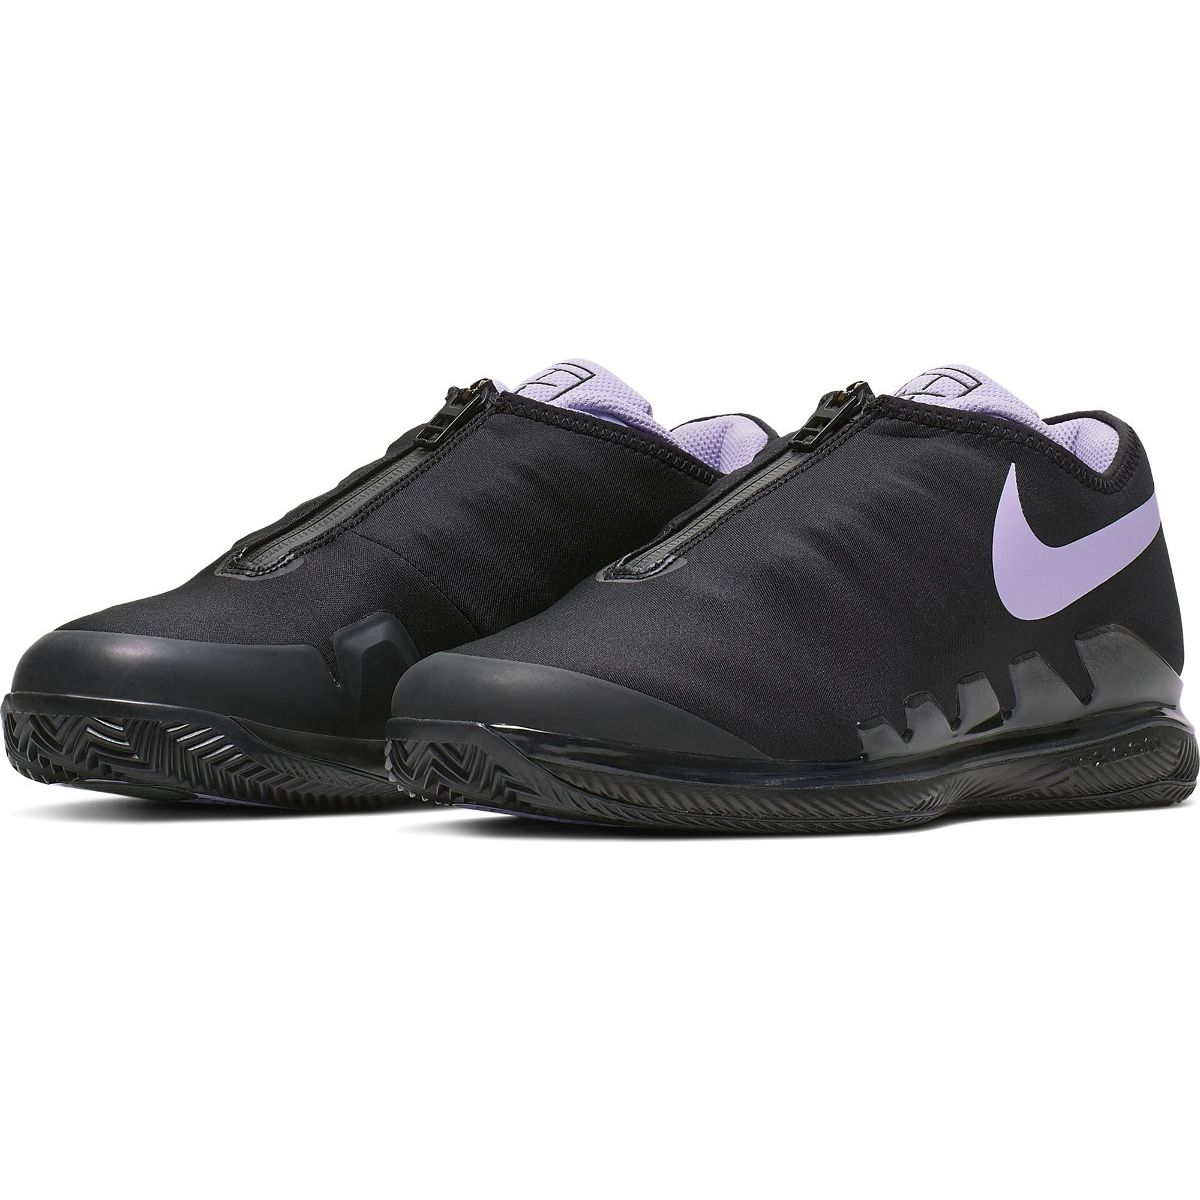 NikeCourt Air Zoom Vapor X Glove Clay Women's Tennis Shoes B